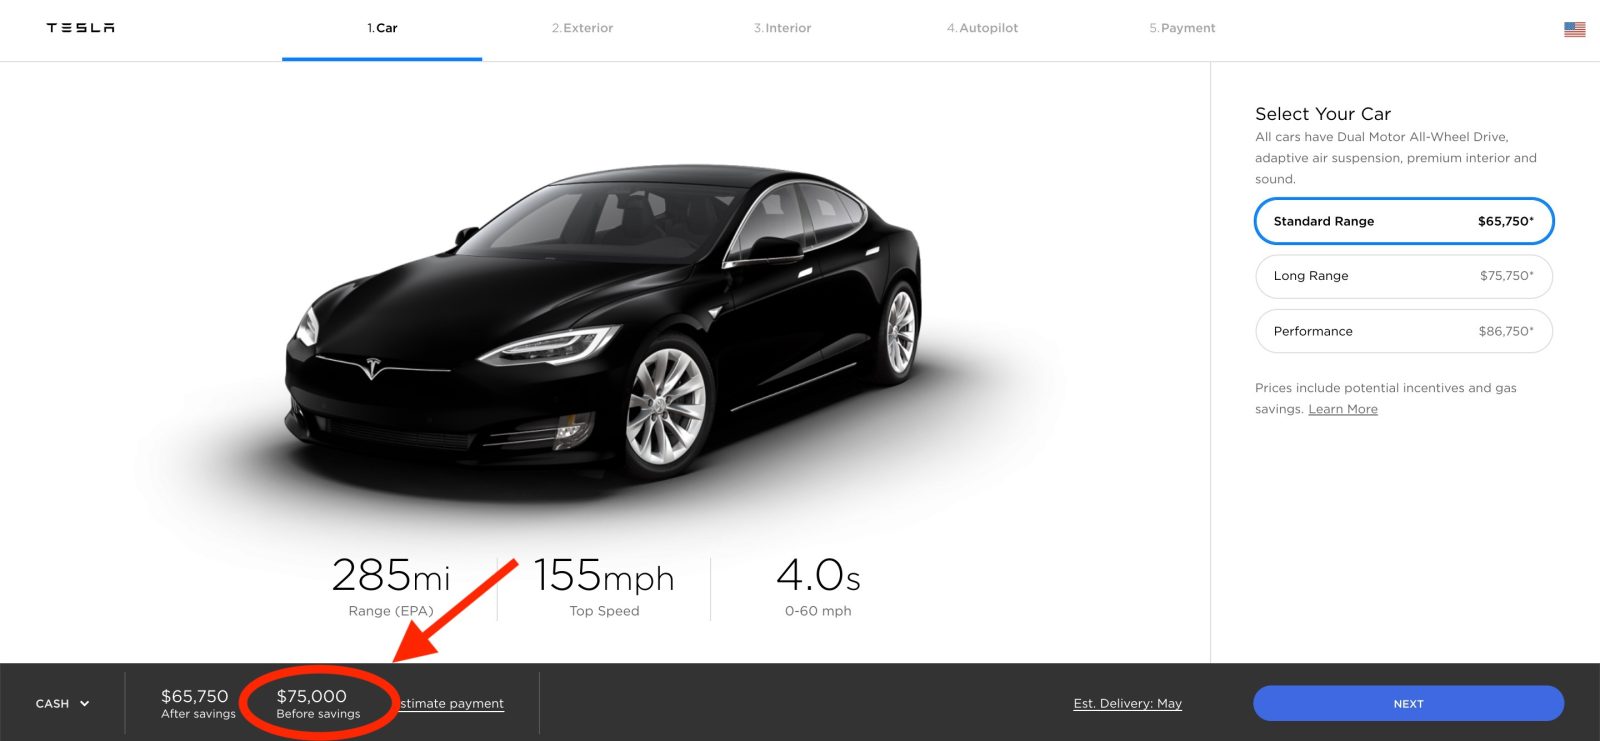 Tesla Model S base price